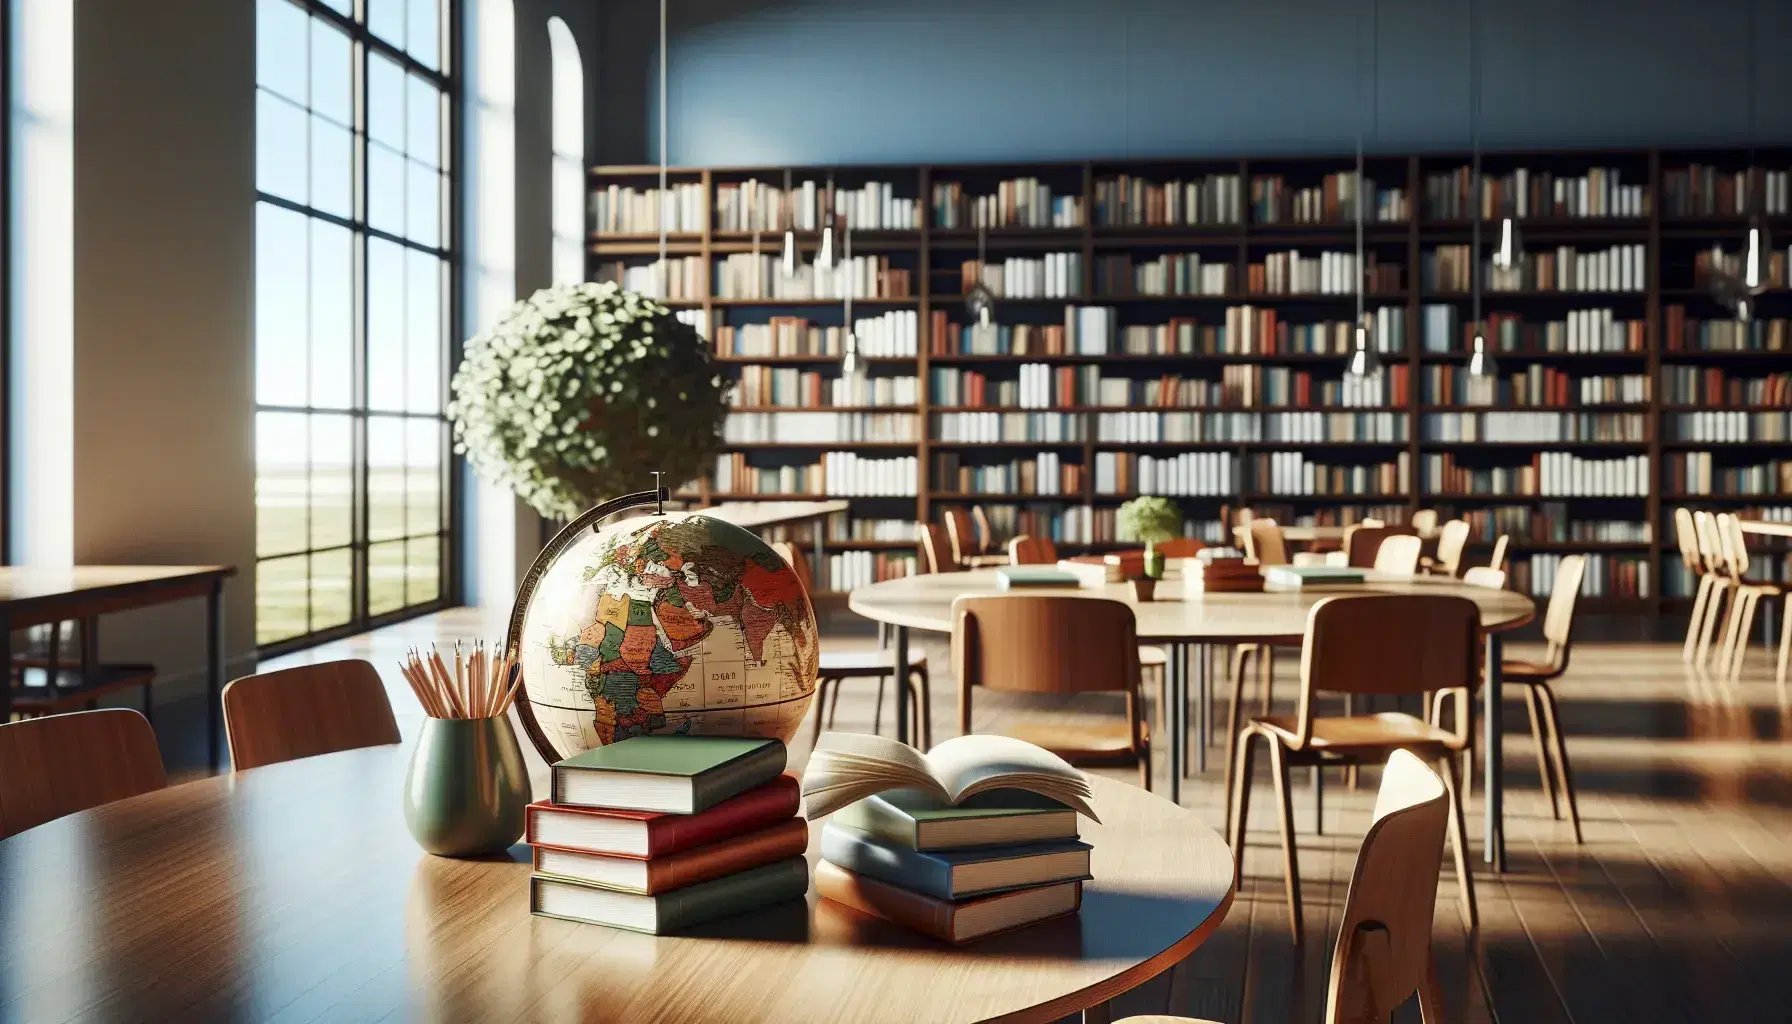 Biblioteca escolar iluminada con estanterías de madera oscura llenas de libros coloridos, mesa con libros abiertos y globo terráqueo, ventana al fondo con cielo azul.